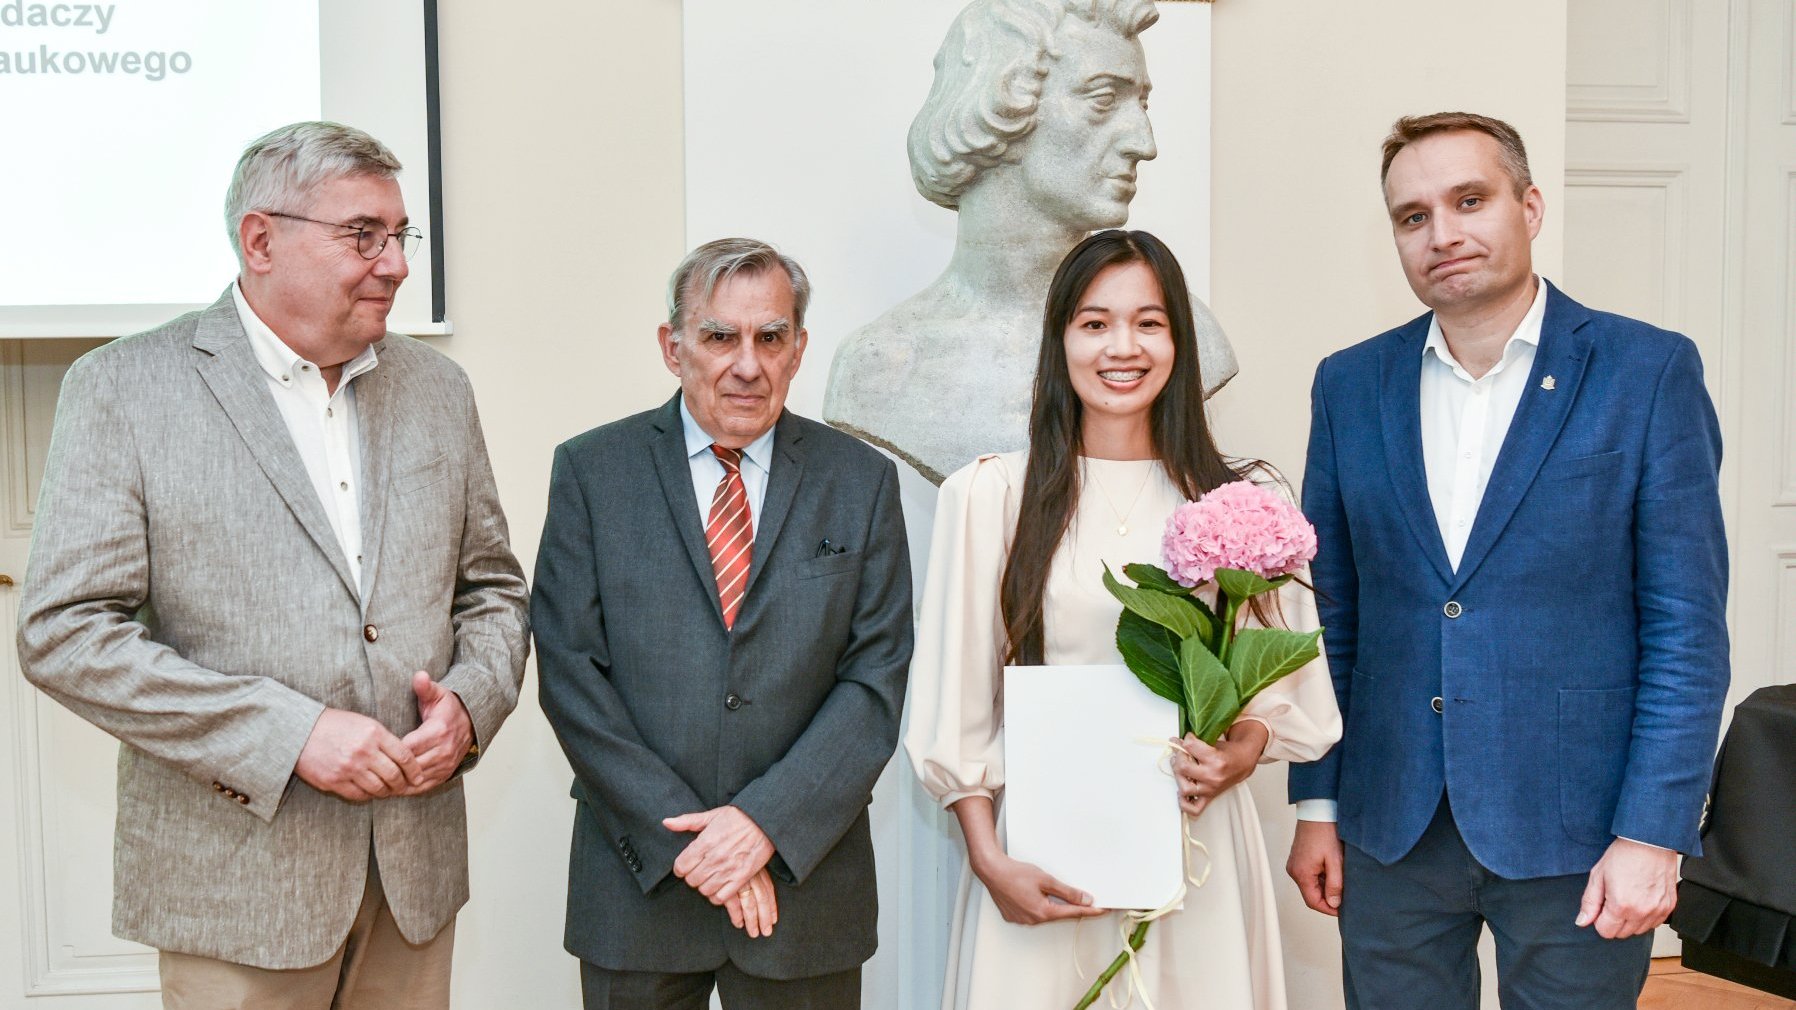 zdjęcie przedstawia cztery stojące osoby, w tym trzech mężczyzn i jedną kobietę, laureatkę stypendium, która trzyma przed sobą dyplom i kwiat